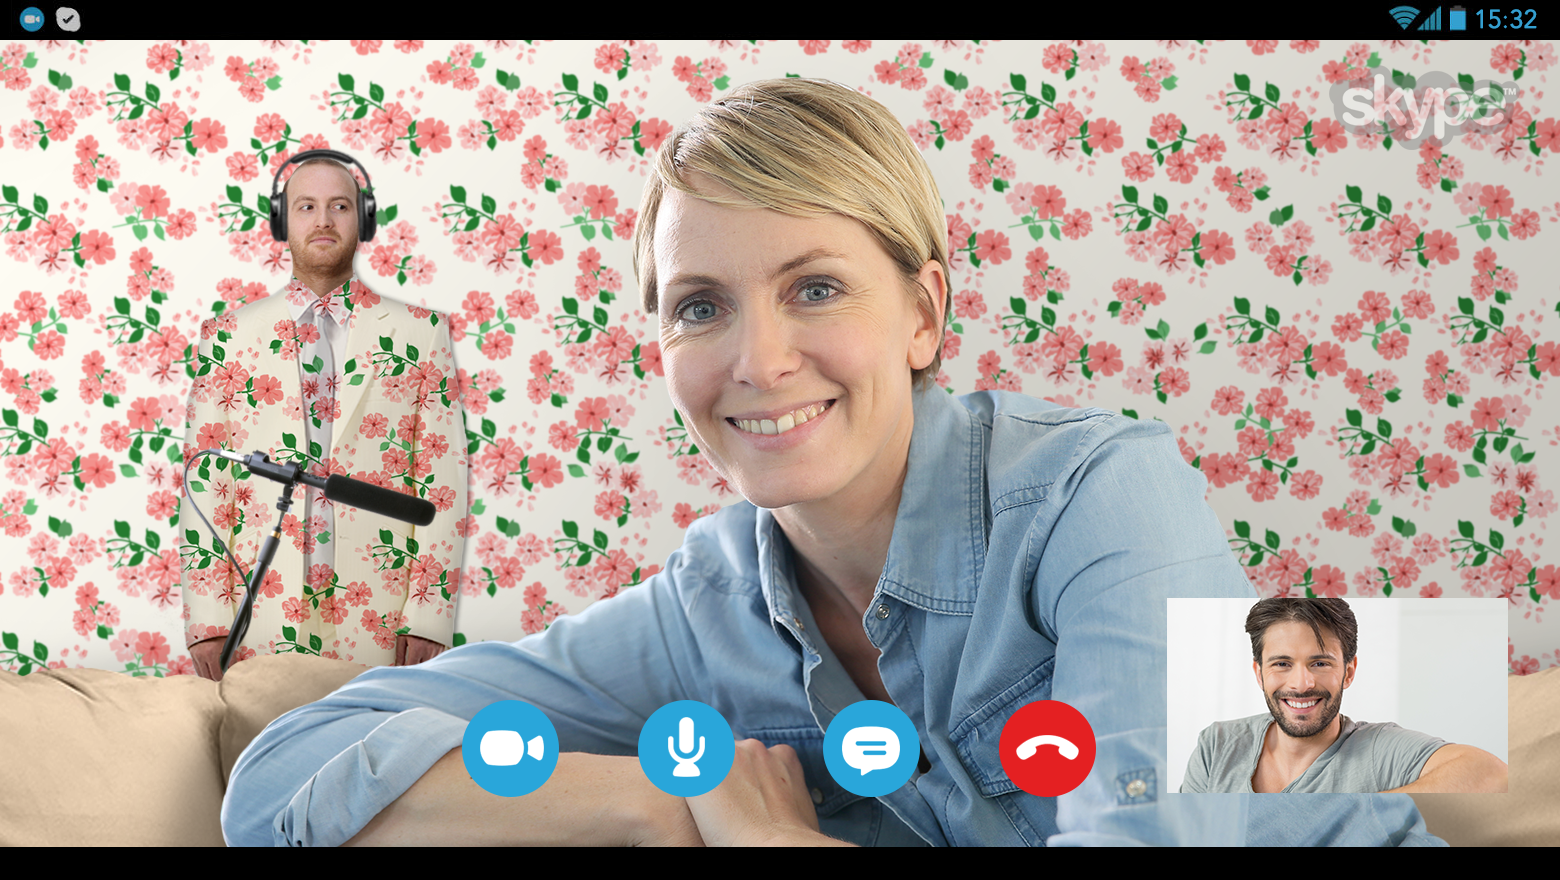 Pedile a Microsoft que proteja nuestra privacidad en Skype